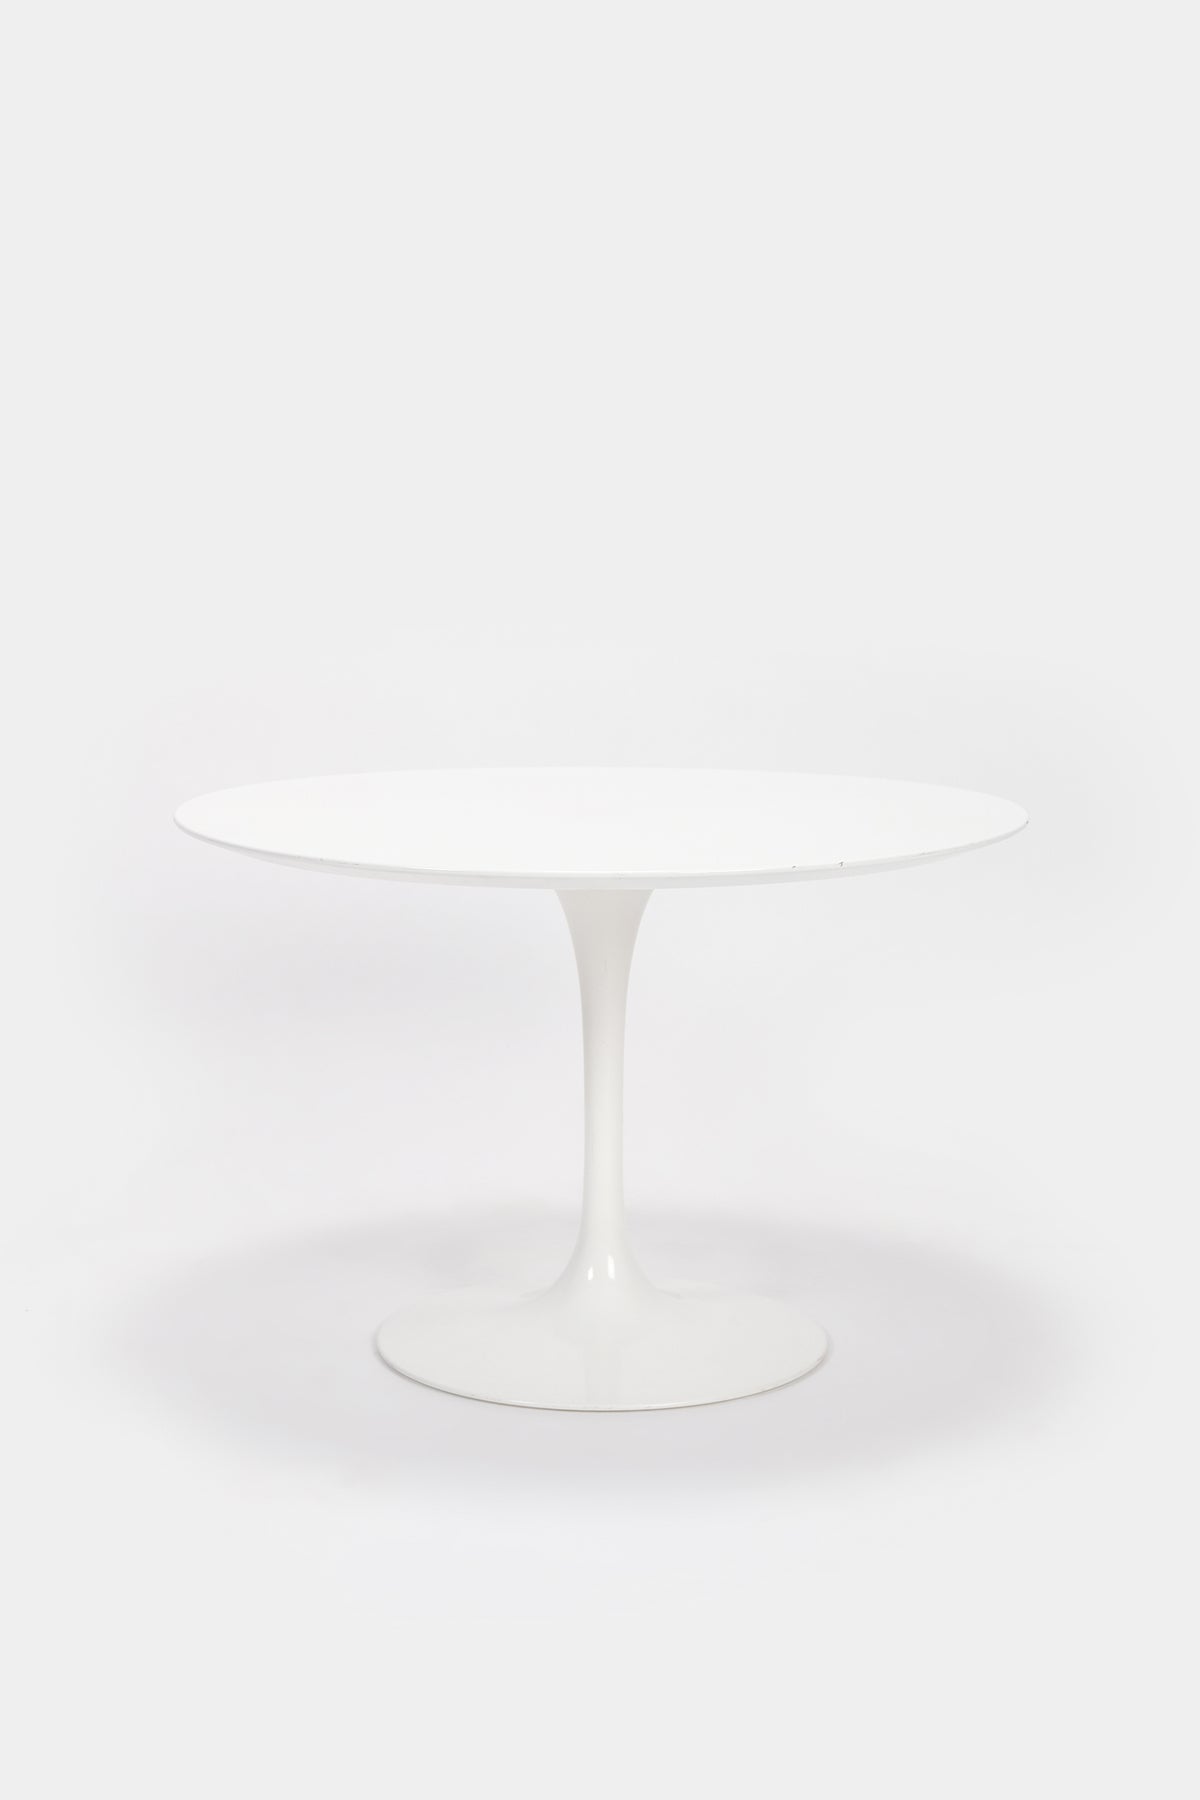 Eero Saarinen Club Table, Knoll International, 70s